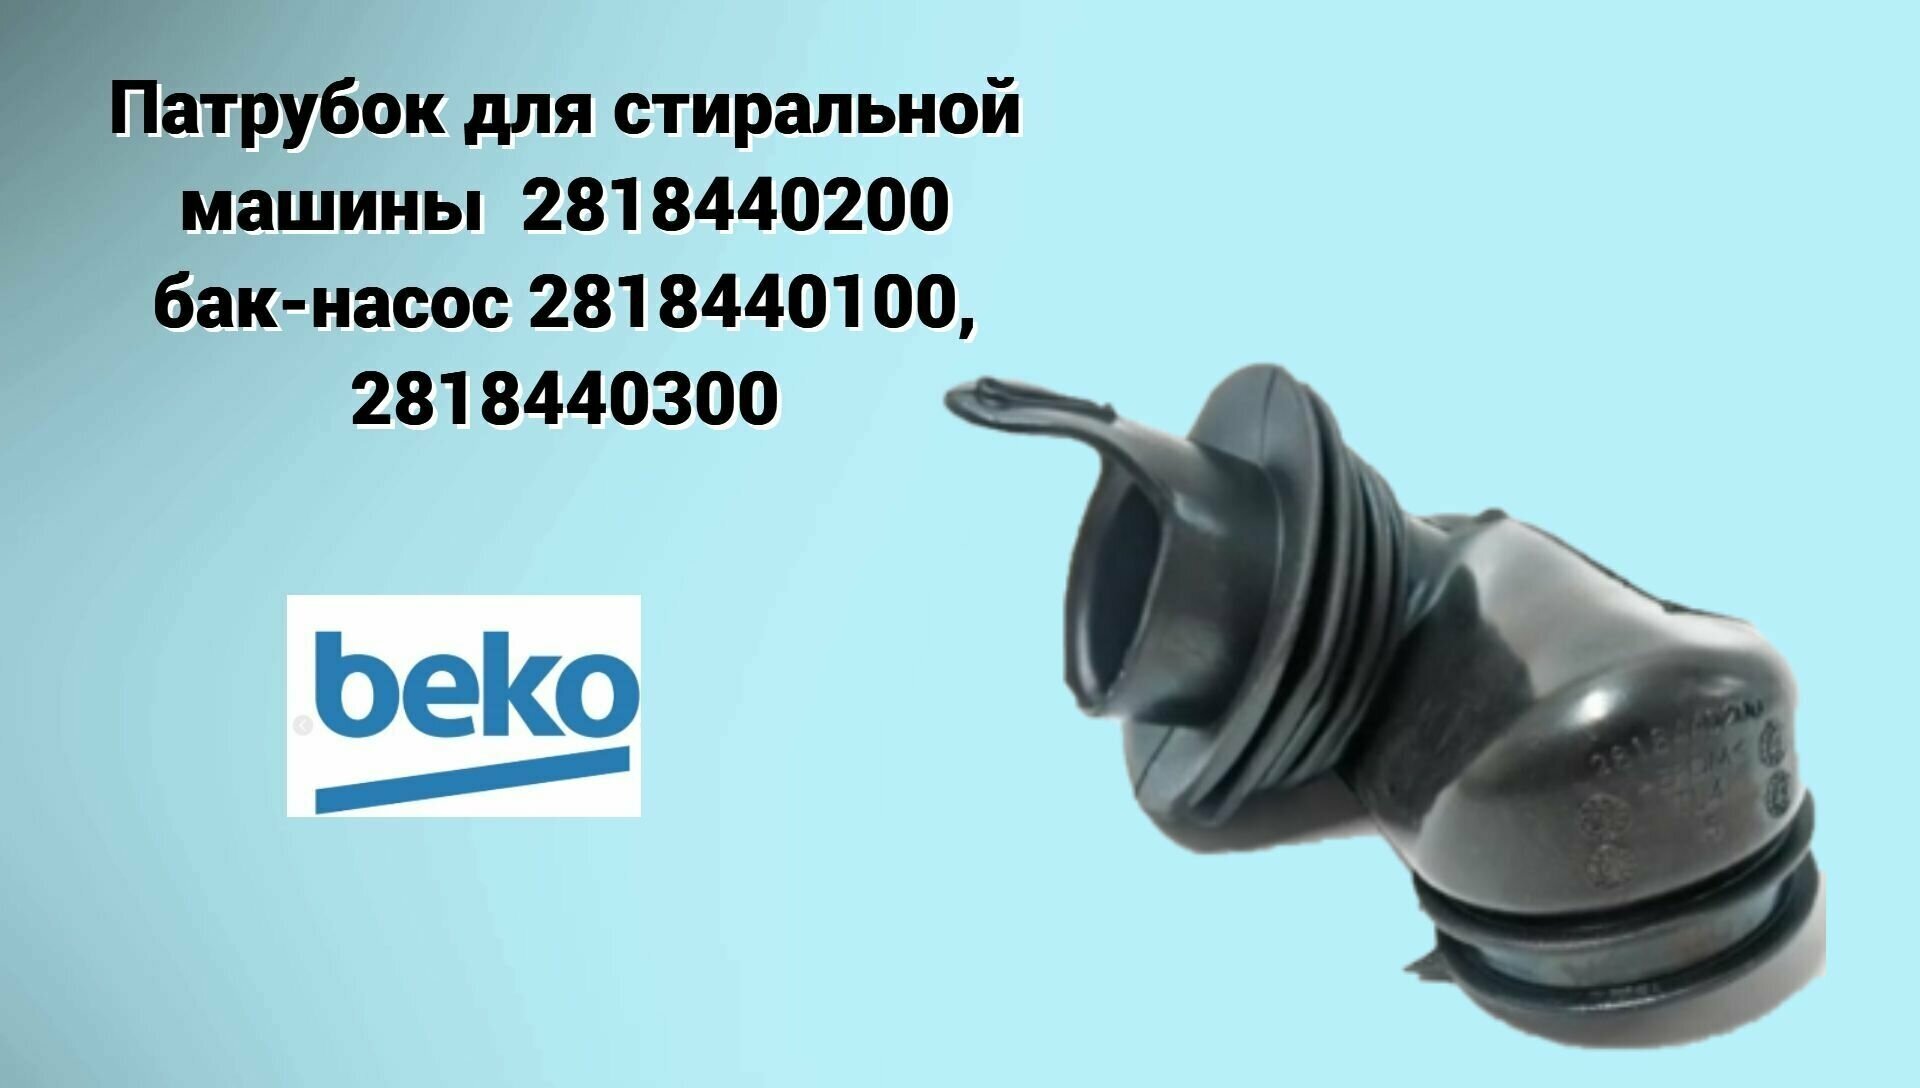 Патрубок дозатор-бак 2818440200 стиральной машины Beko